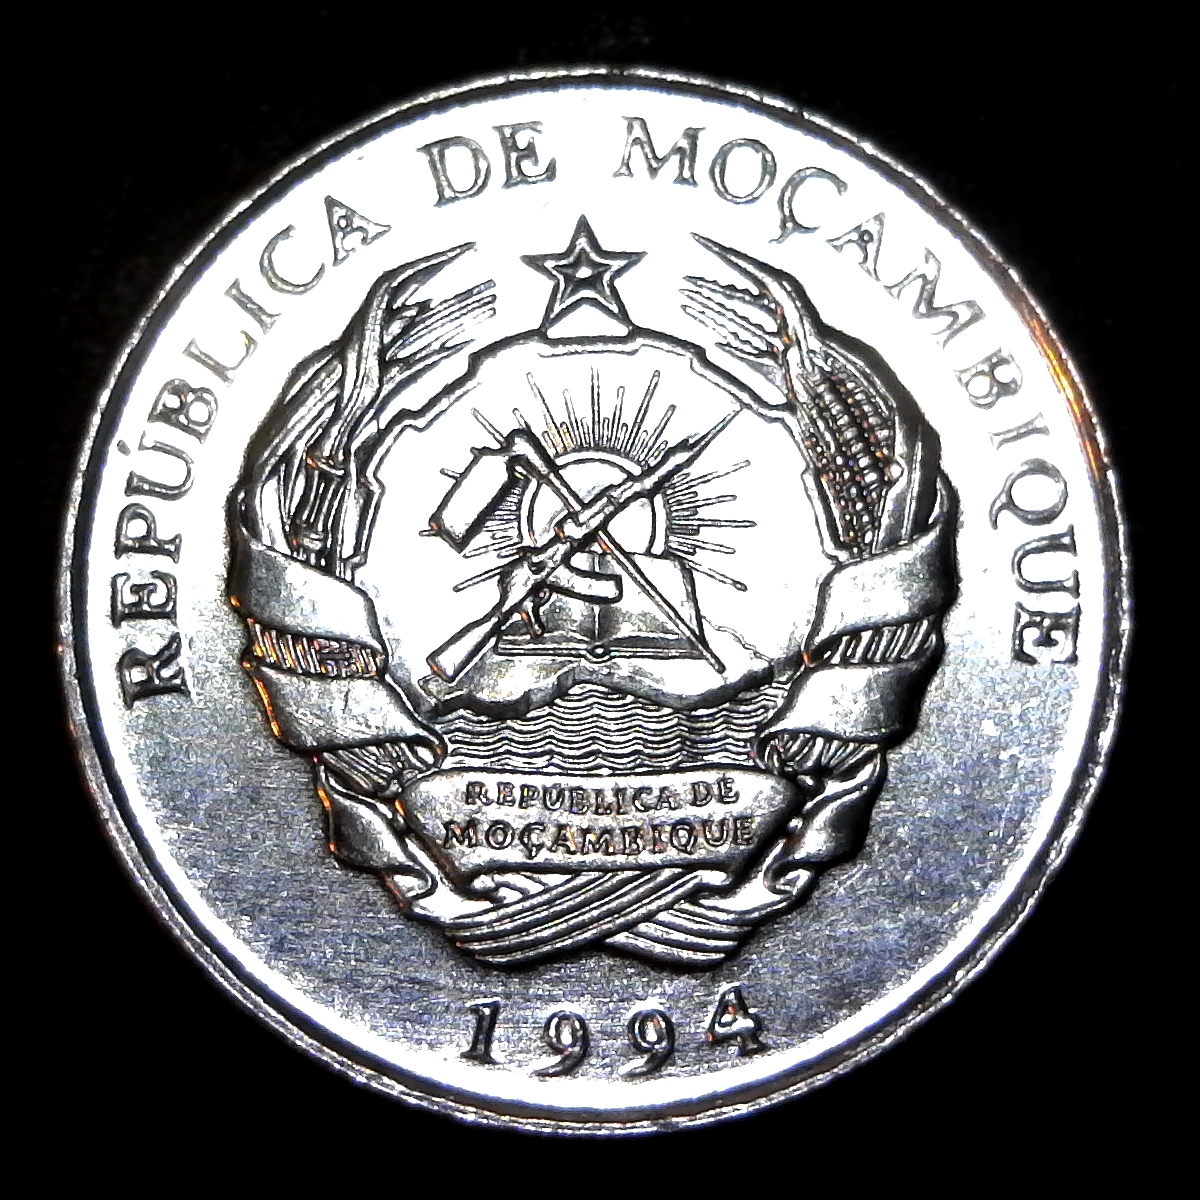 Mozambique 50 Meticais 1994 rev.jpg